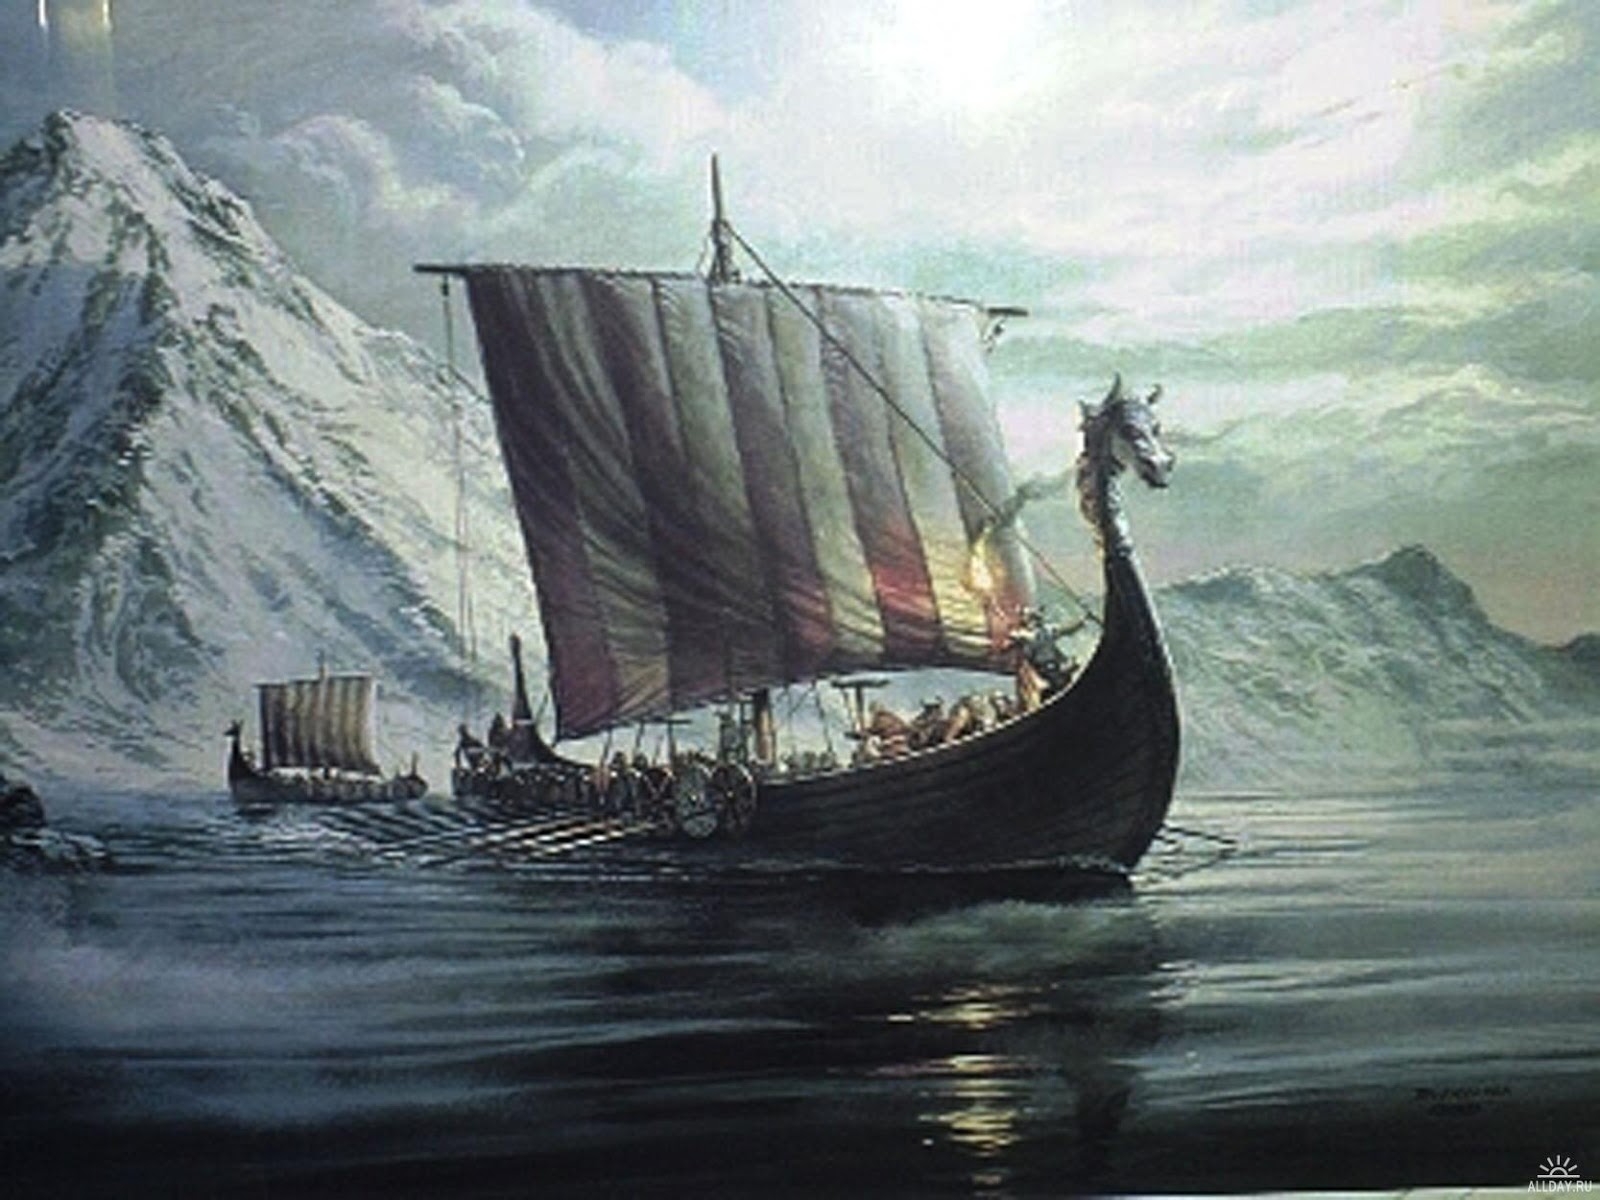  Vikings  TV Show Wallpapers  4K  HD 1080p 4K  wallpaper  